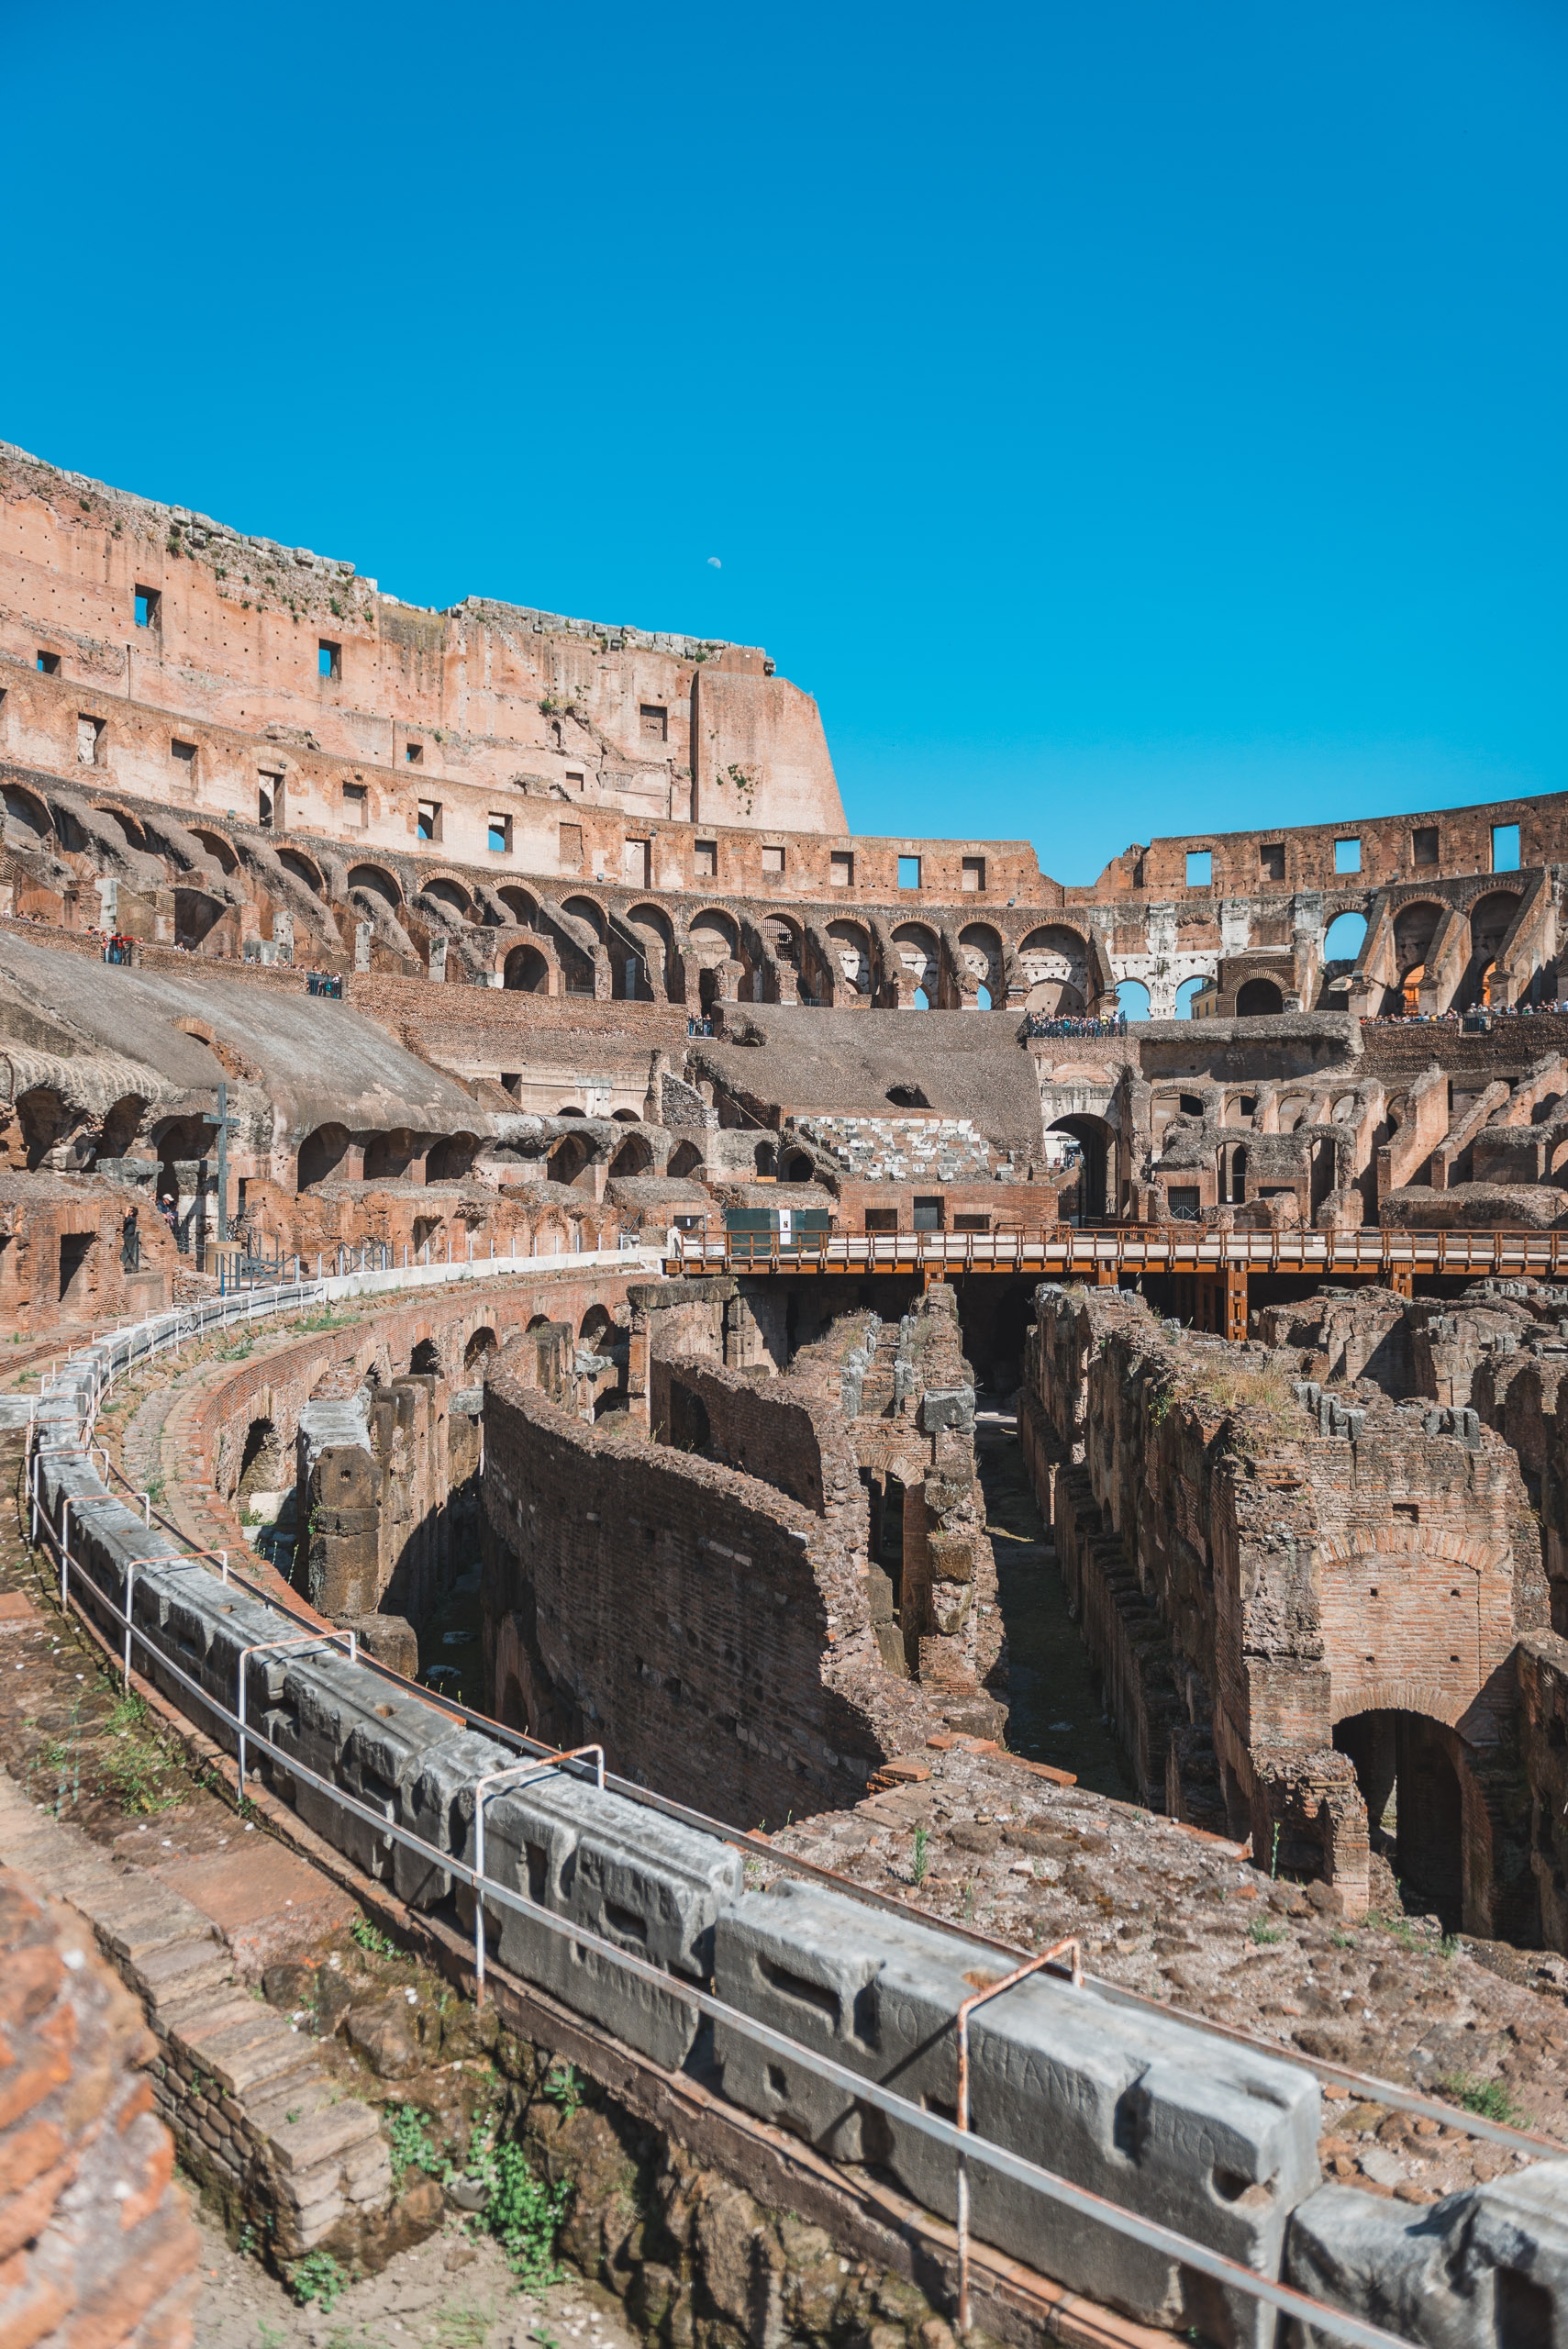 Inside the Colosseum 4